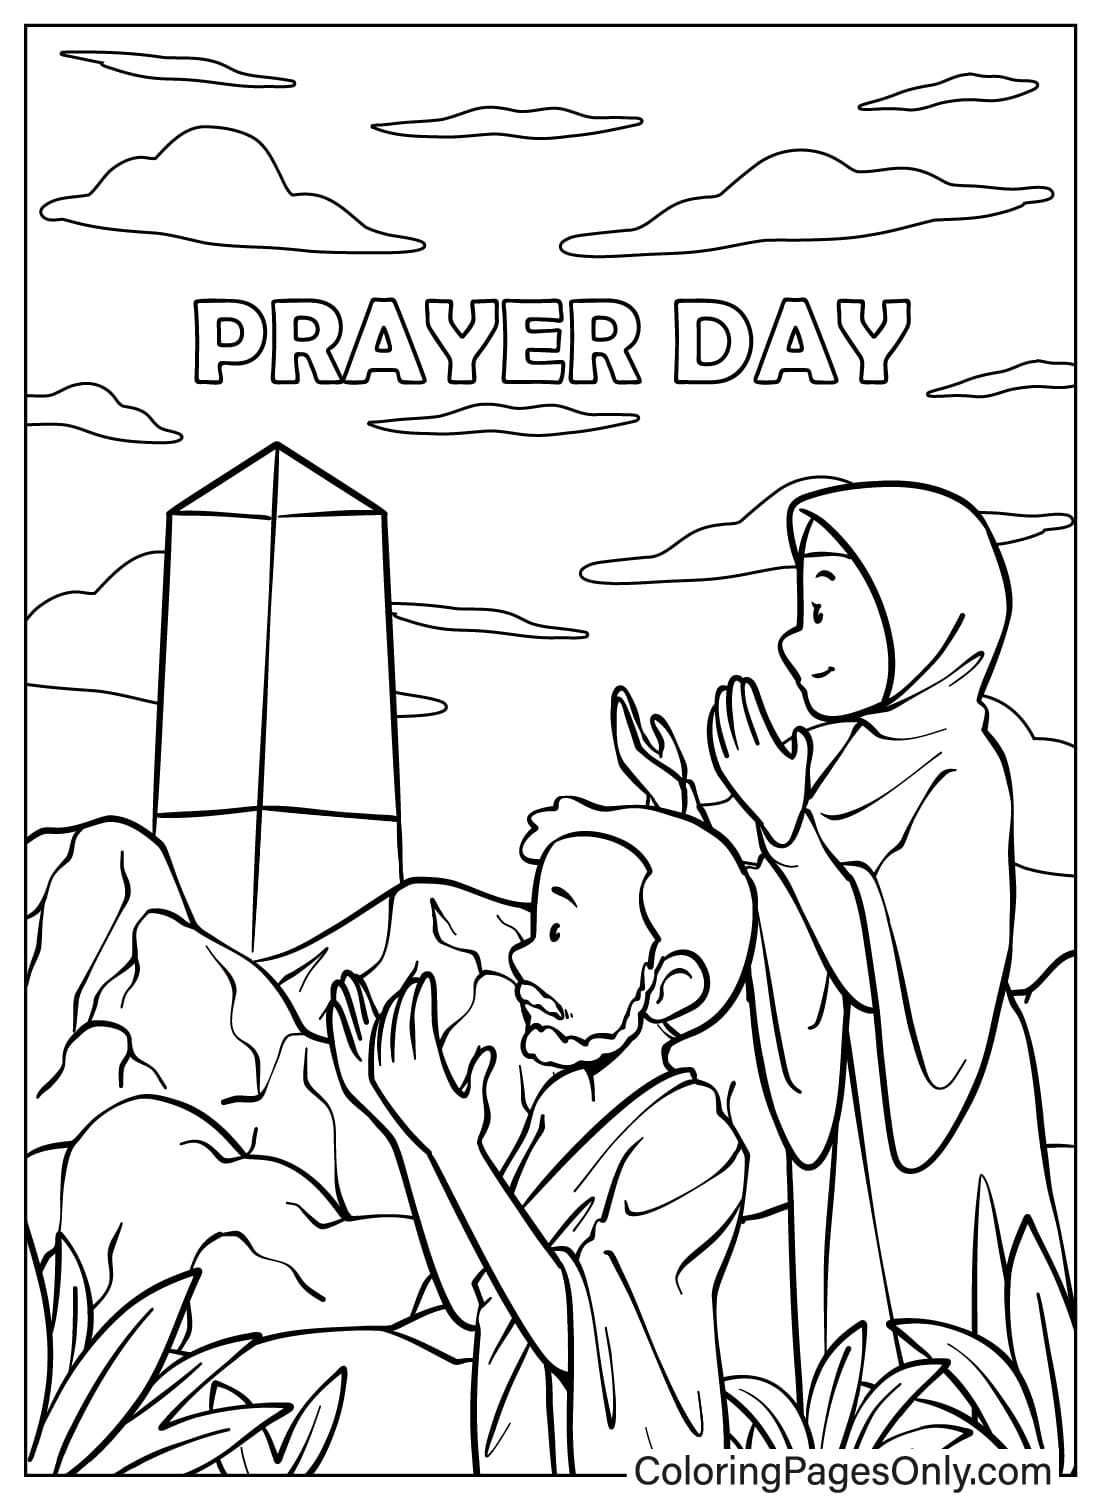 Homem e mulher orando no dia de oração